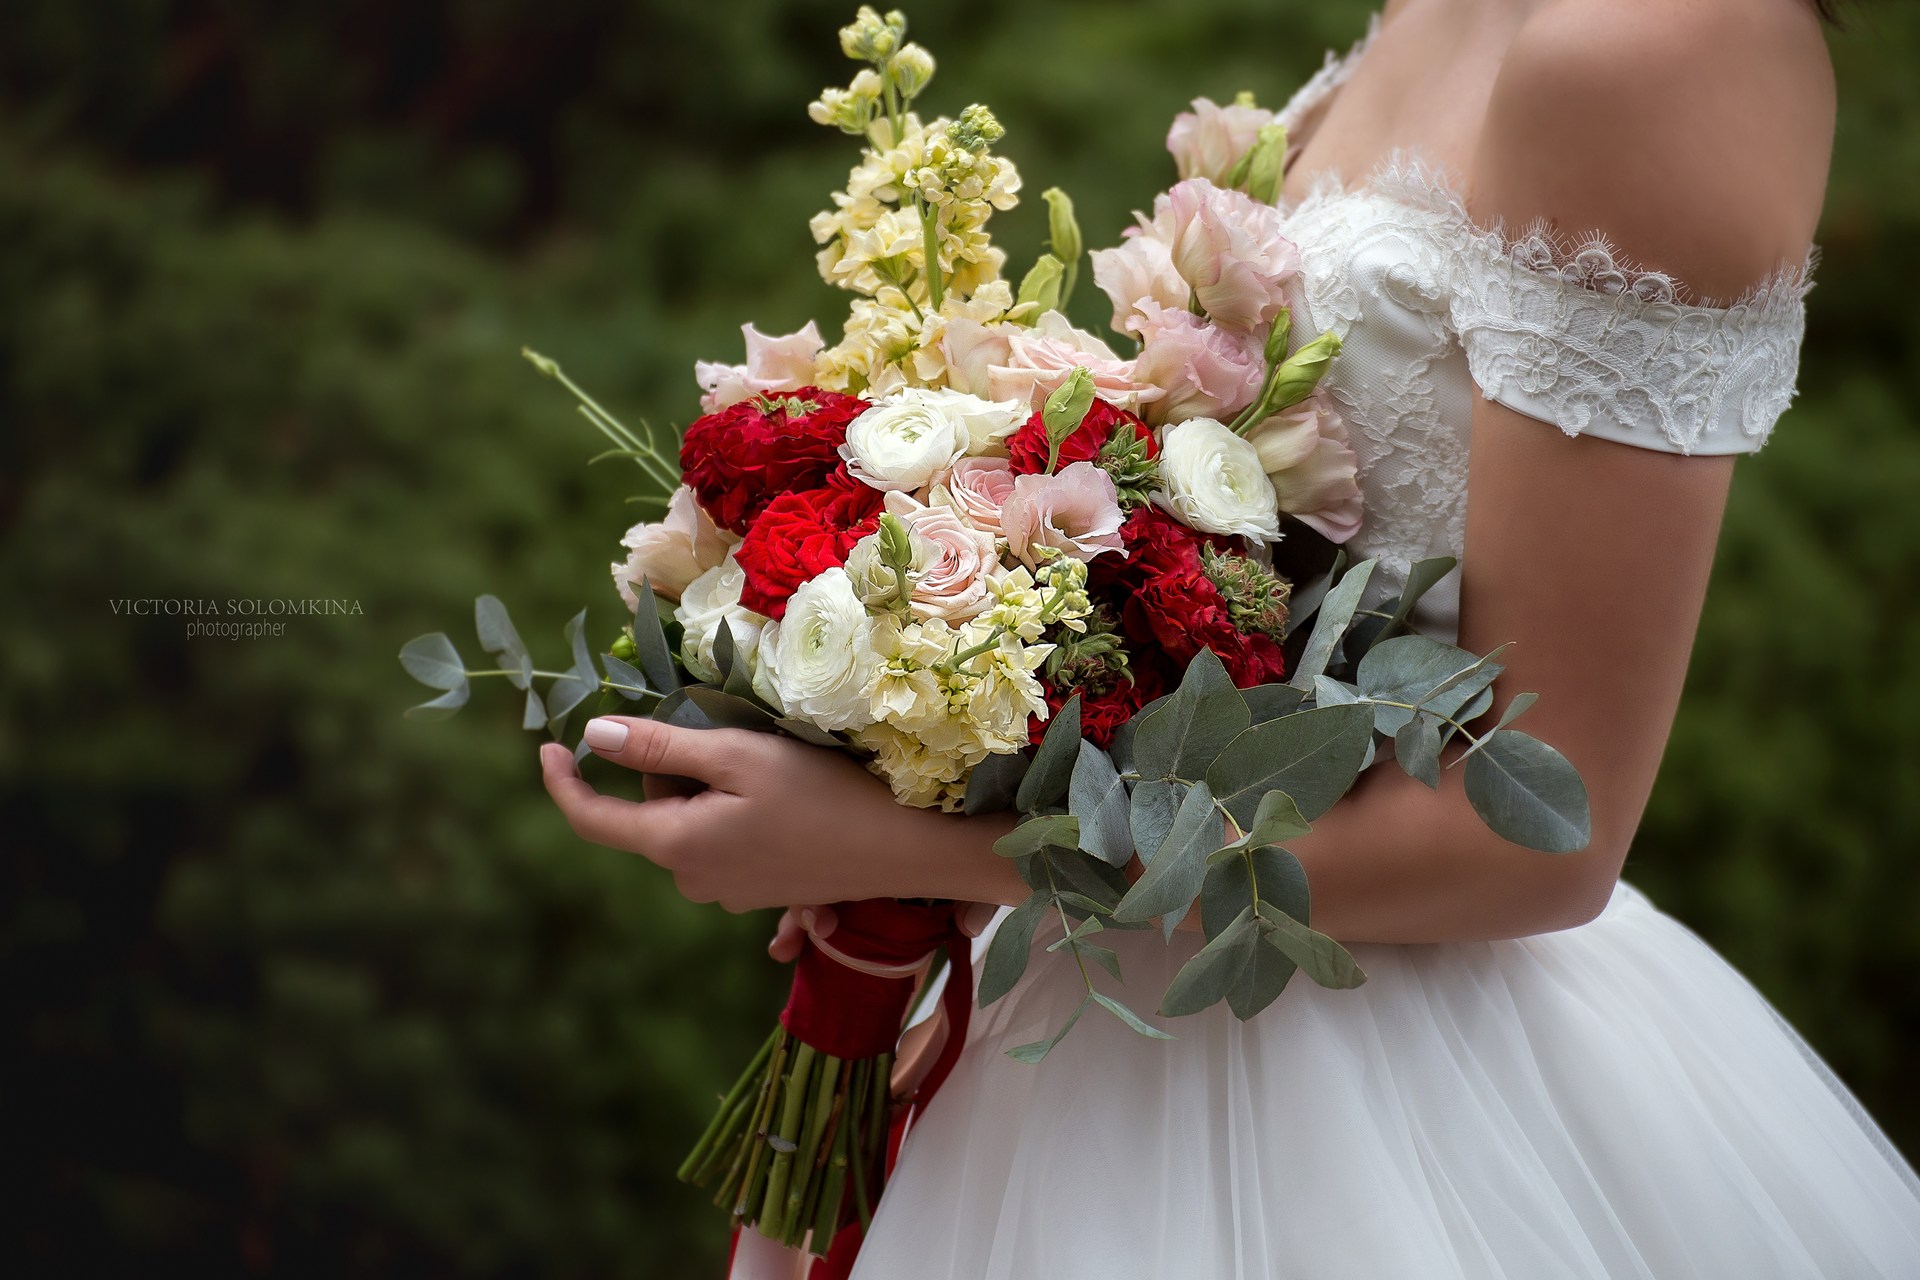 Букеты майкоп. Фото невесты Майкоп. Покажи цветы Майкопа невеста.